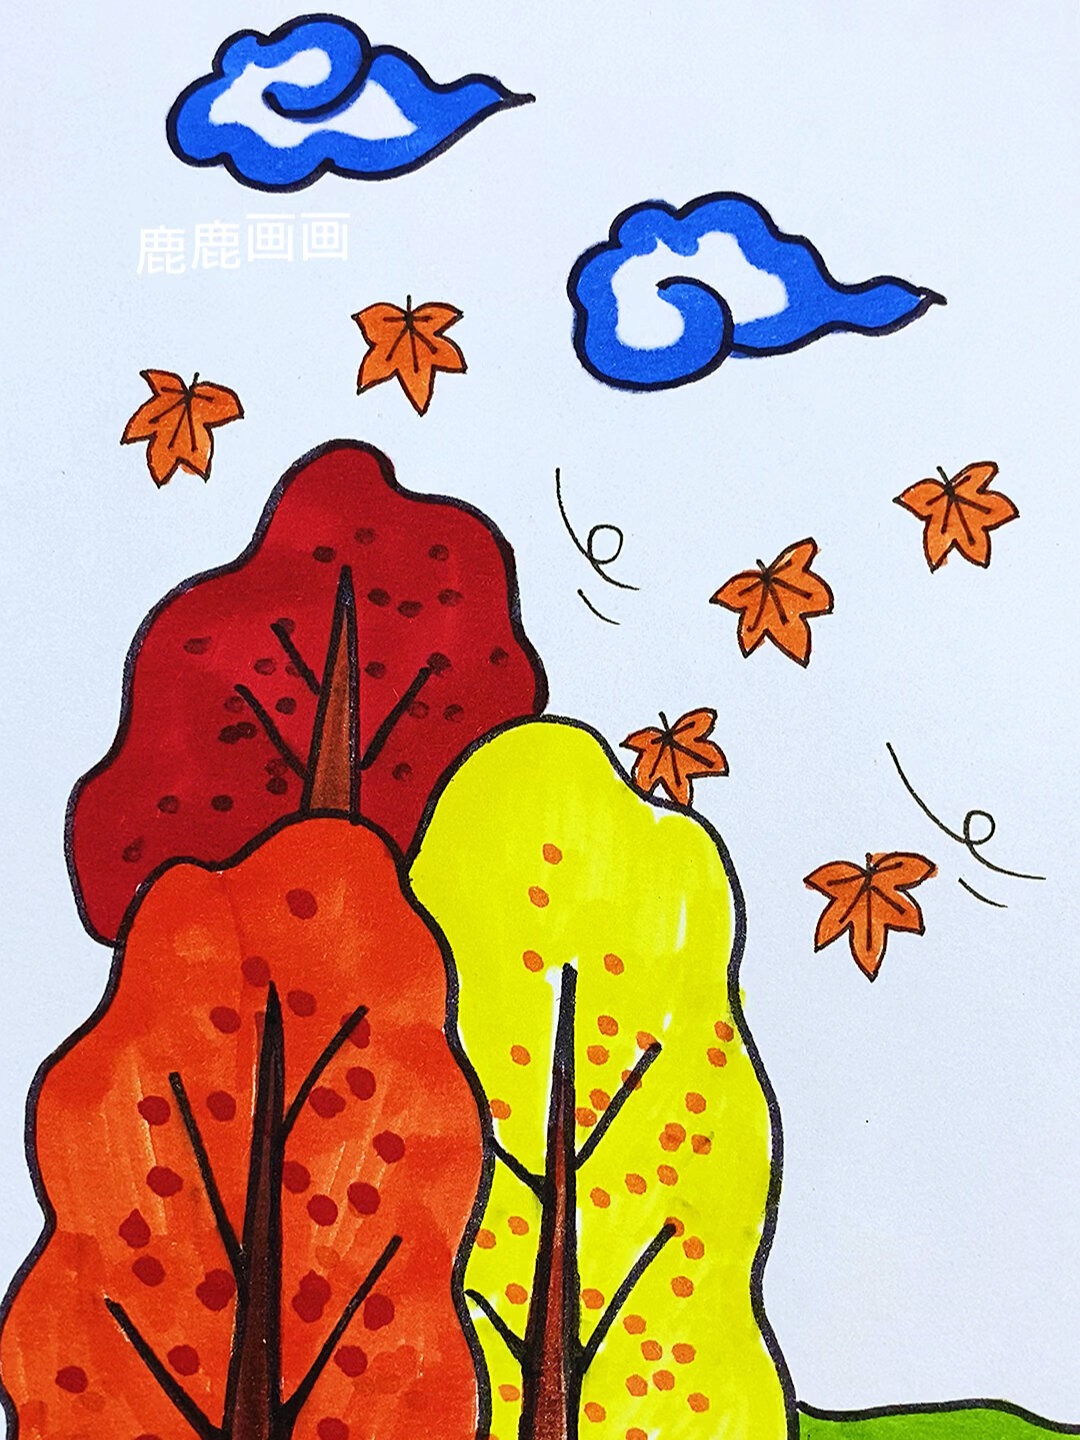 画秋天,简单又好看的大自然主题画